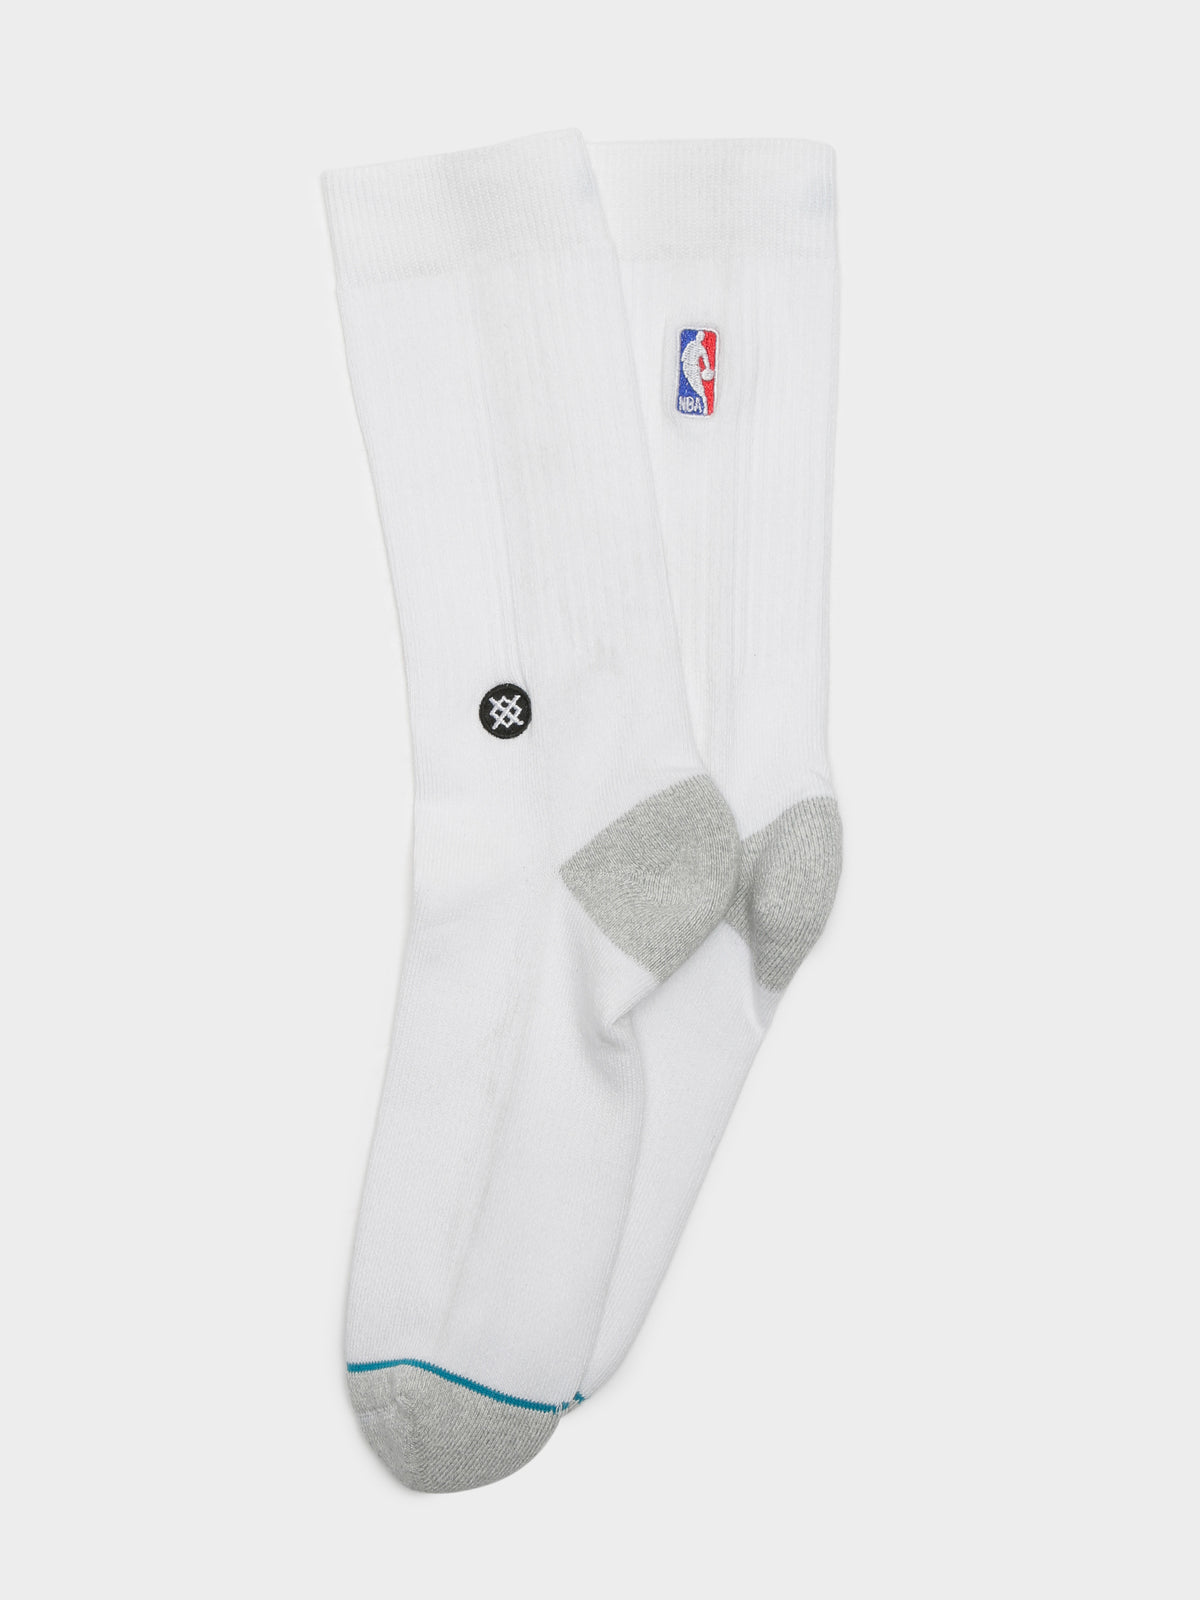 NBA Logoman Crew Socks in White